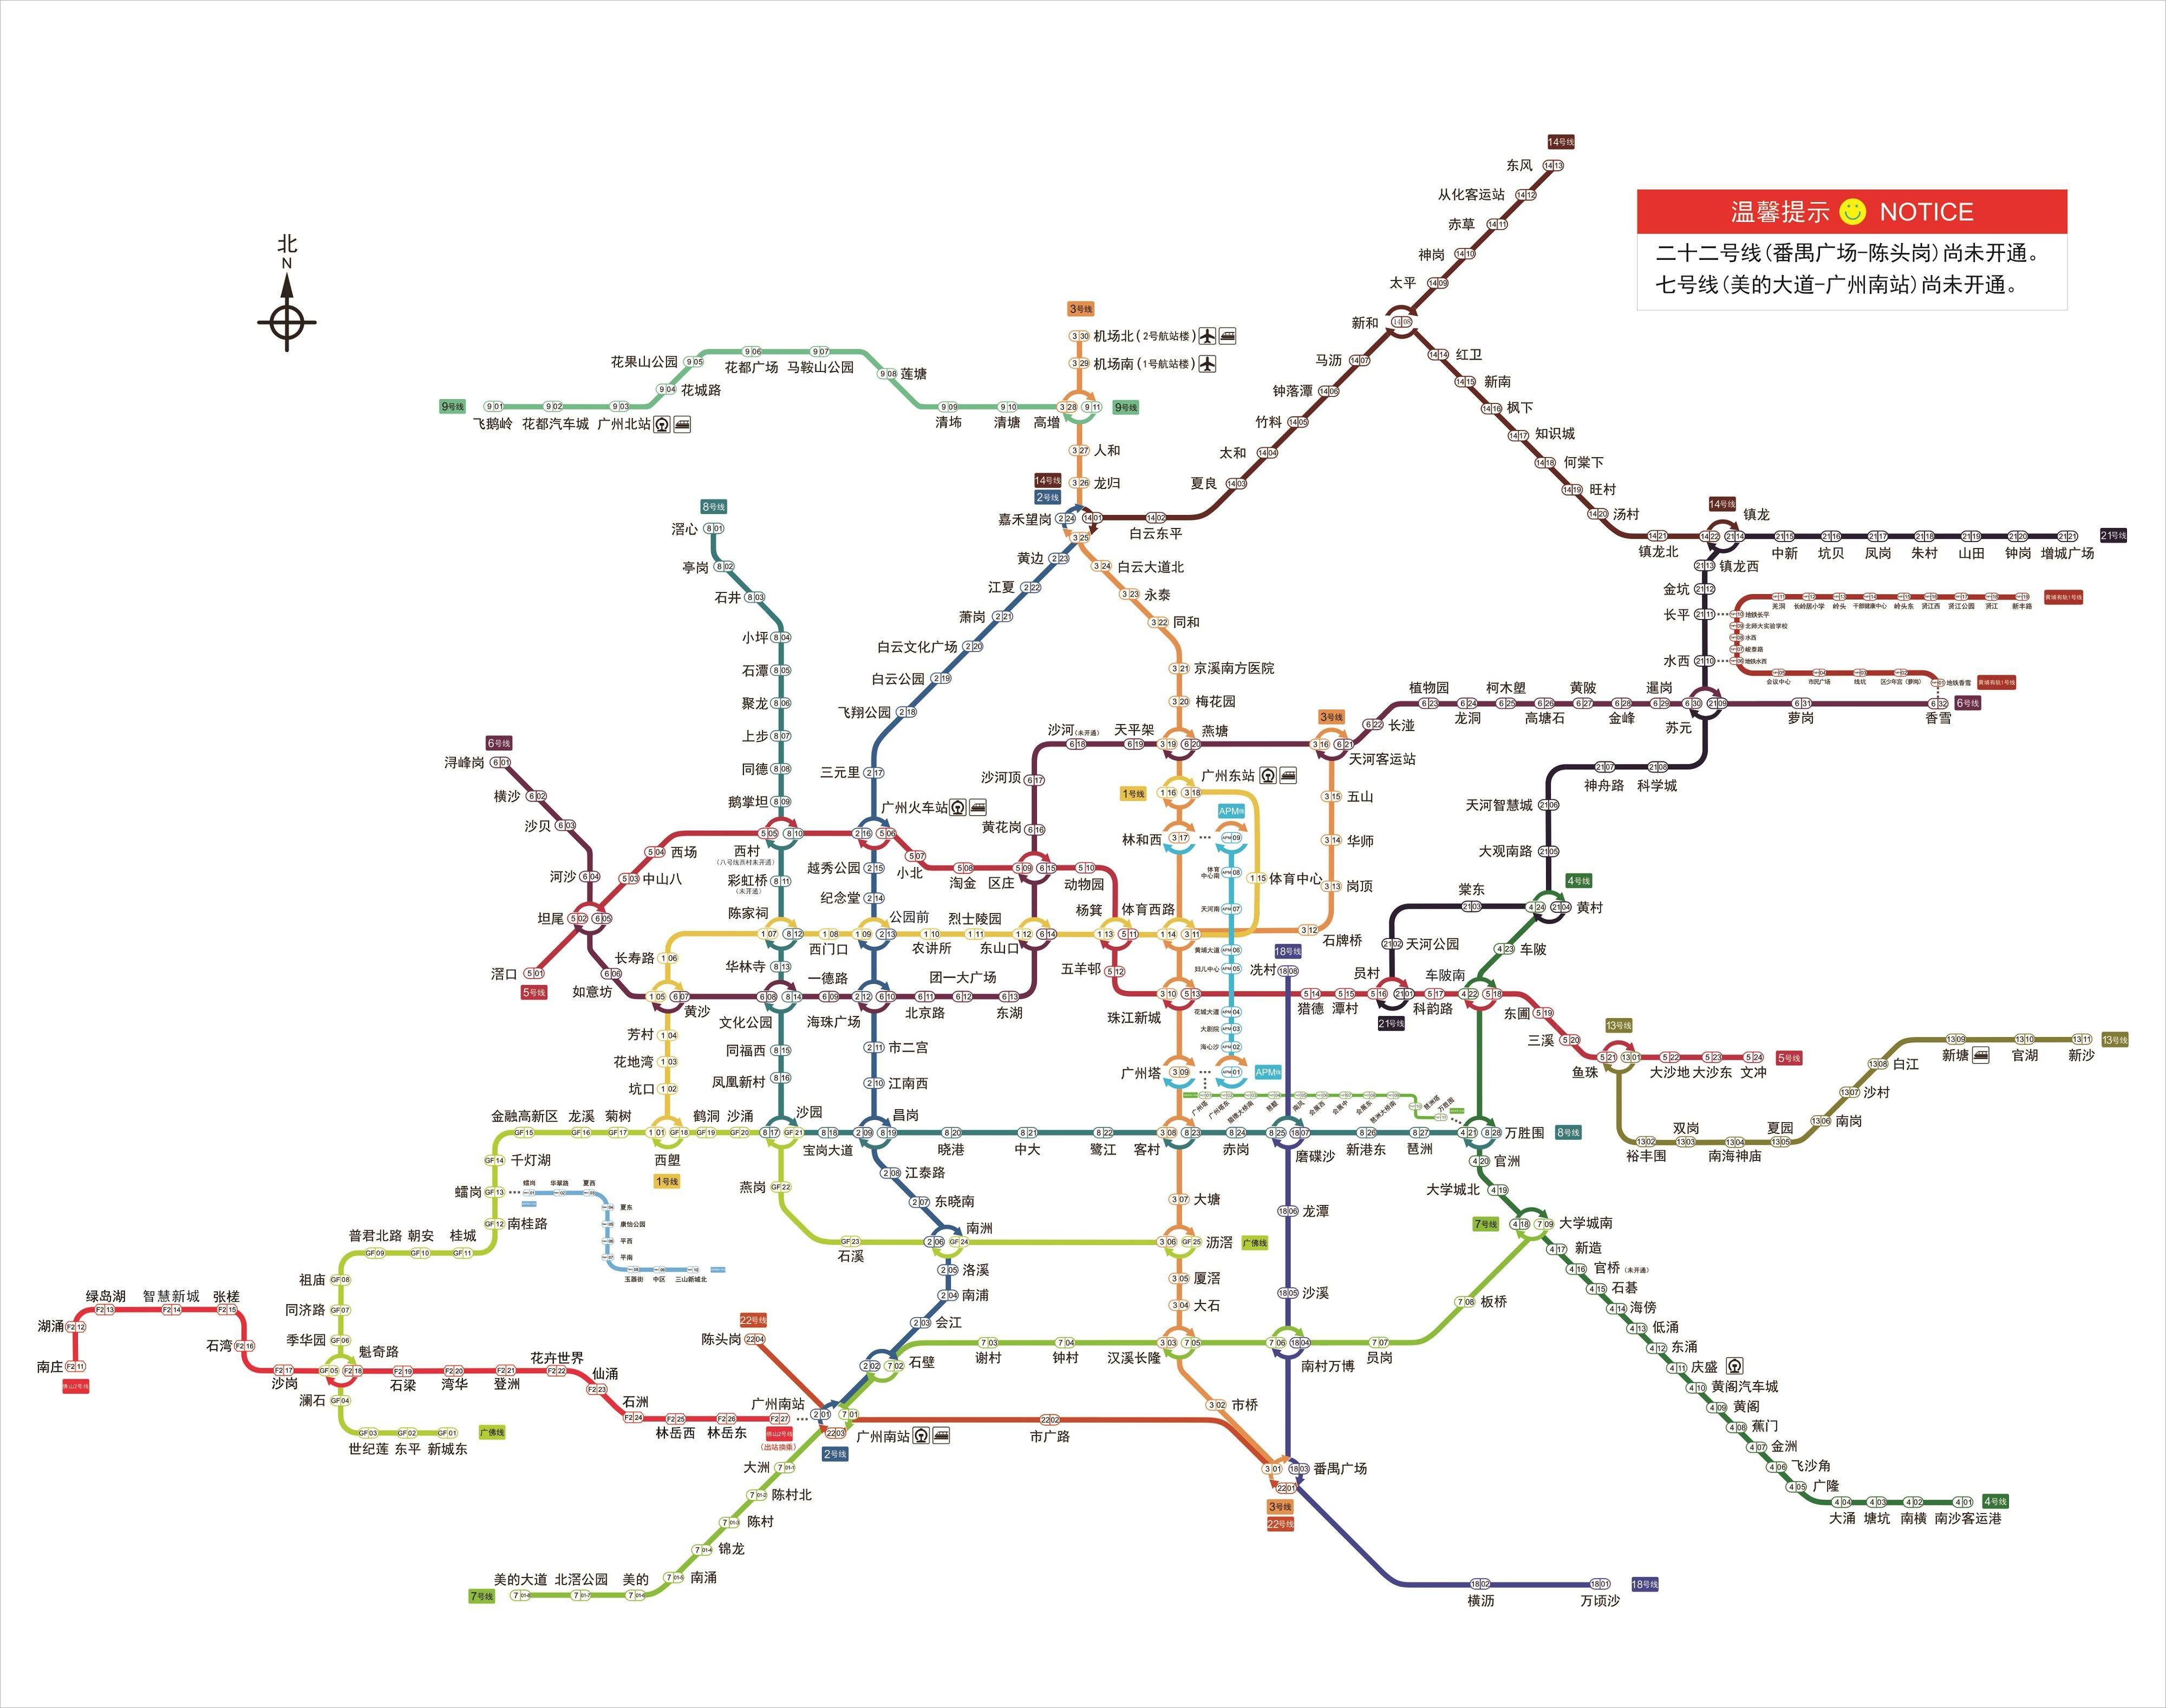 乘客对新增佛山地铁线路图的建议,广州地铁回应了